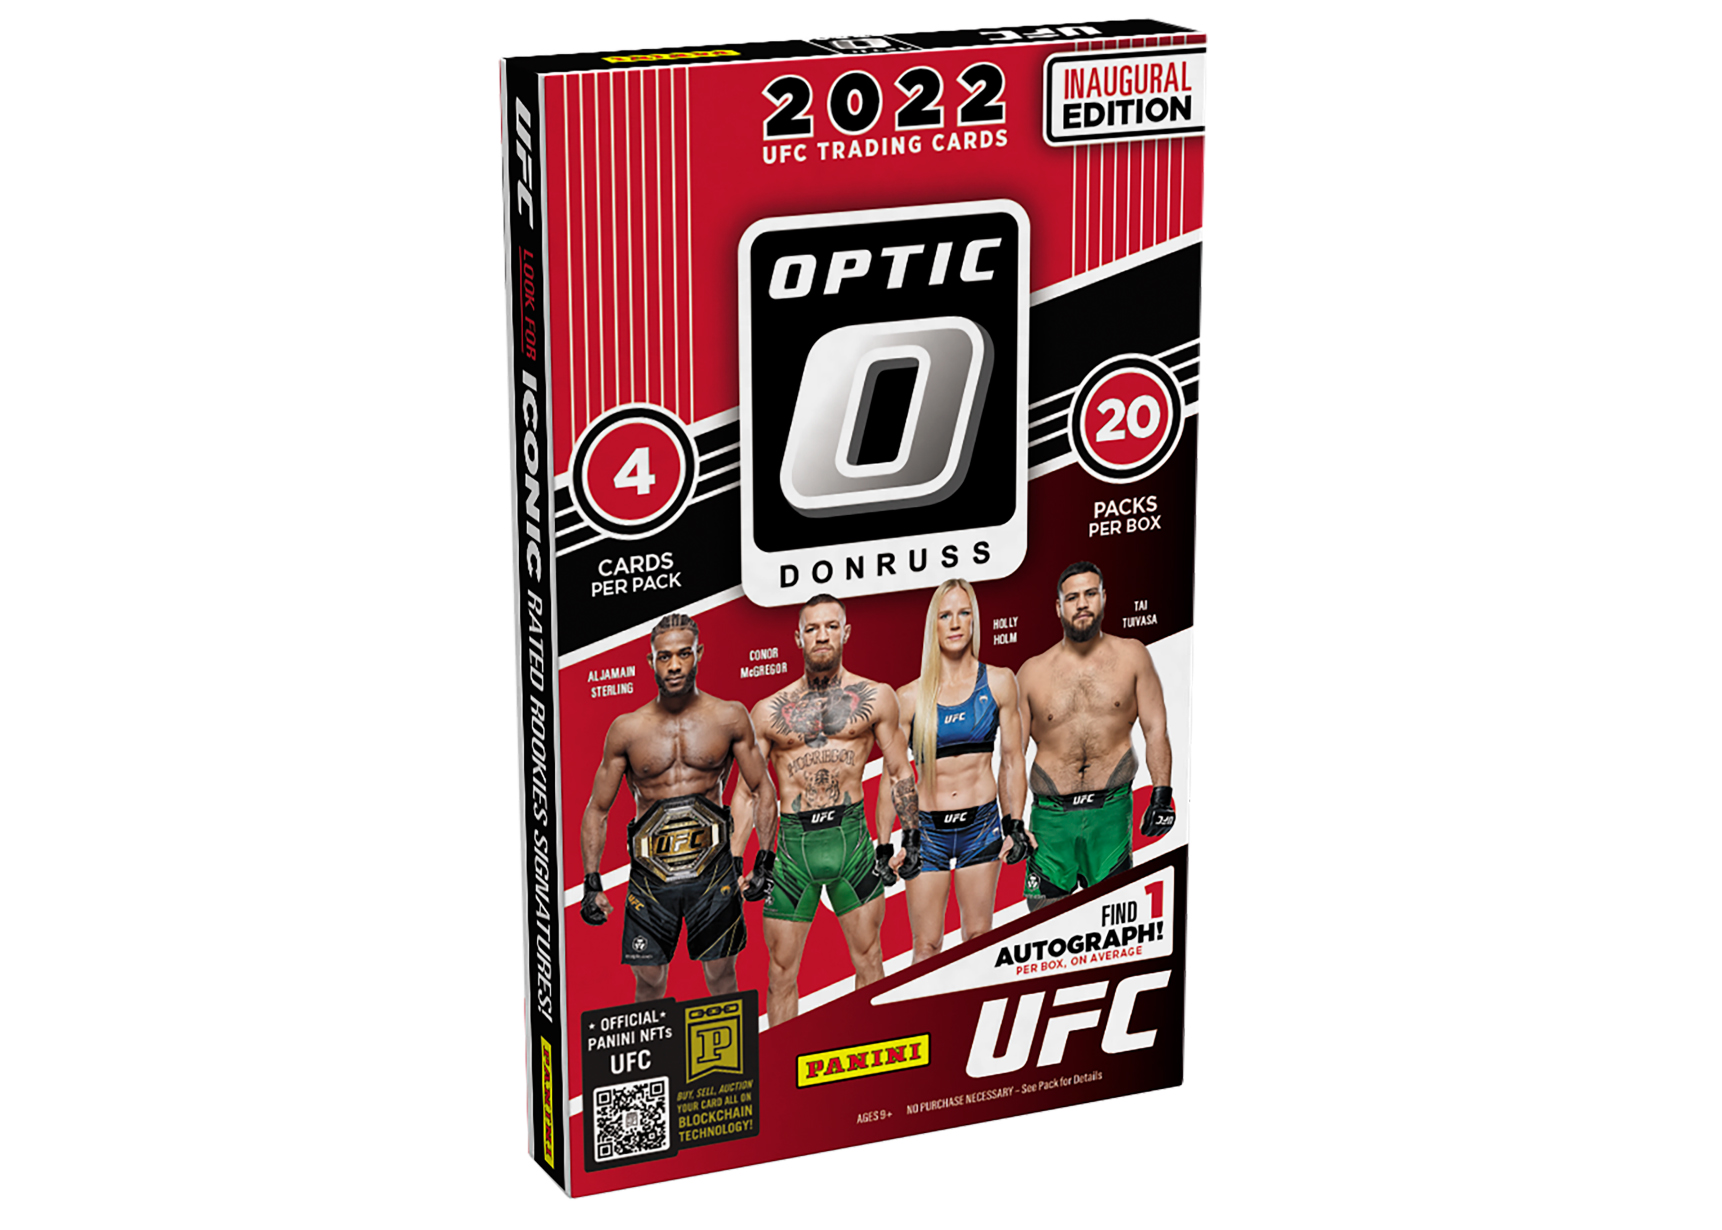 品質保証定番UFC PANINI 2022 DONRUSS BLASTER カートン(20BOX入り) その他